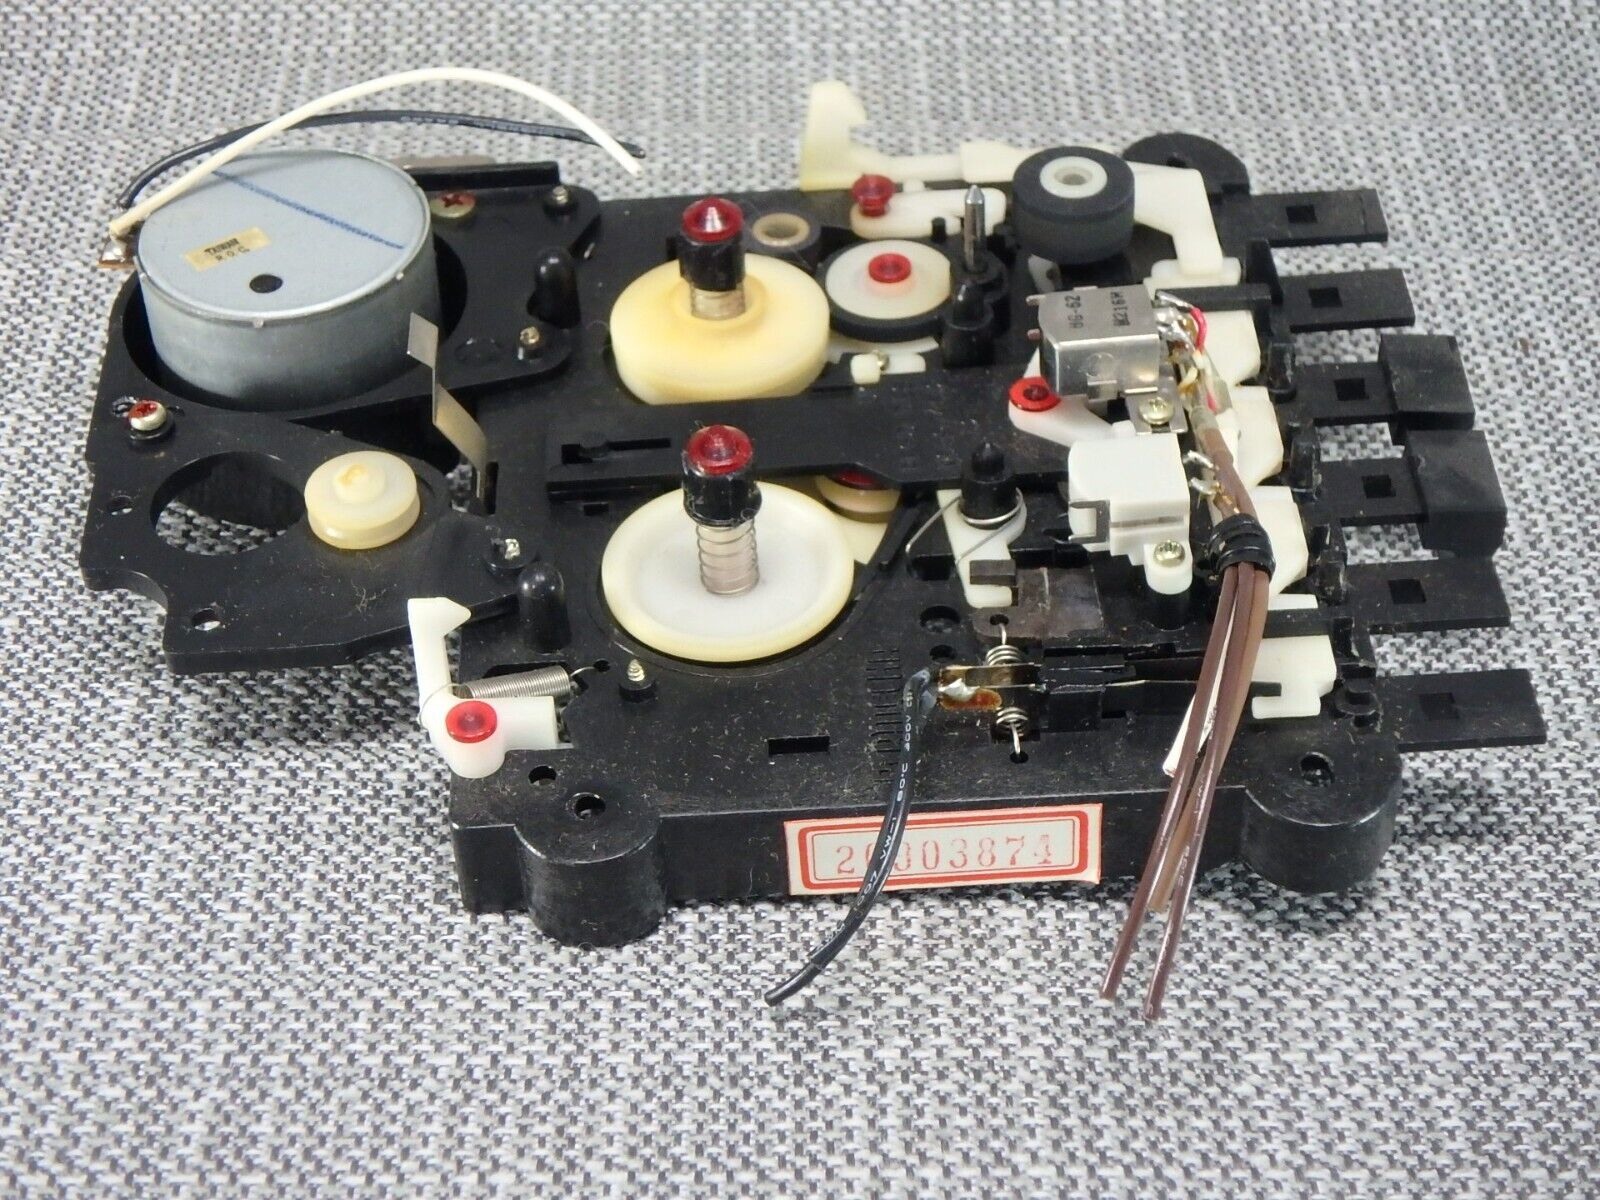 Vintage Atari 410 Cassette Program Recorder Parts Replacement Cassette Drive